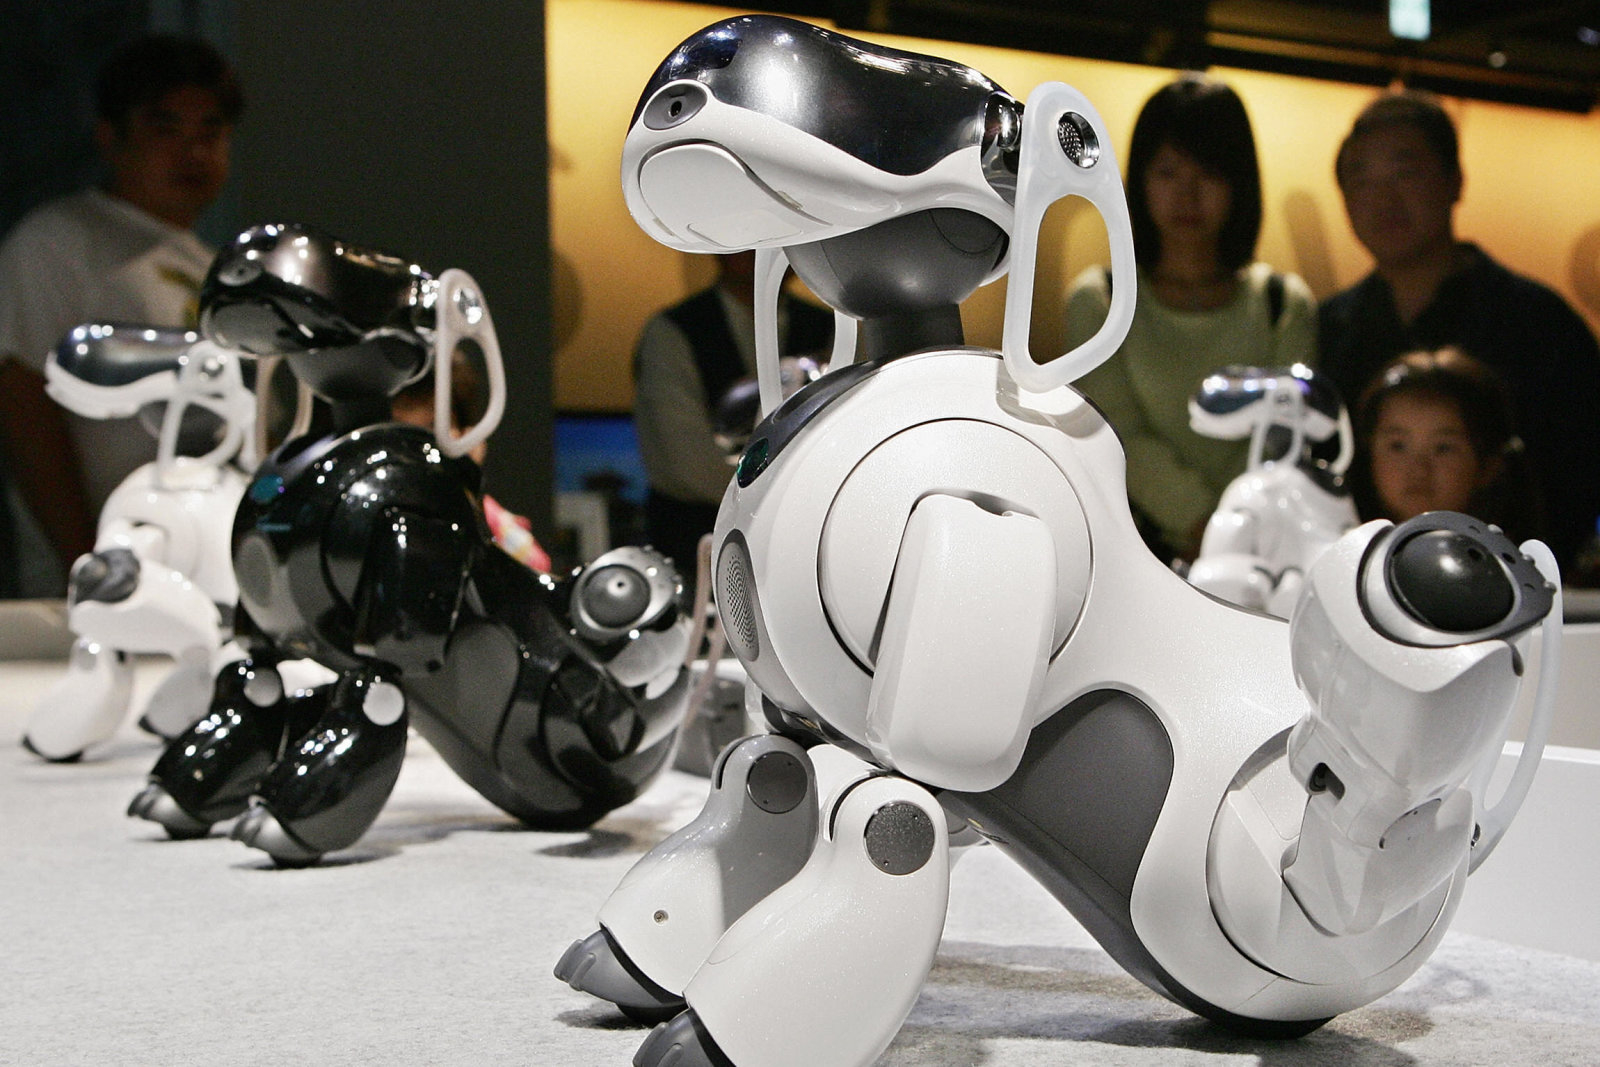 Sony после многолетнего перерыва возобновляет производство роботов, по типу Aibo